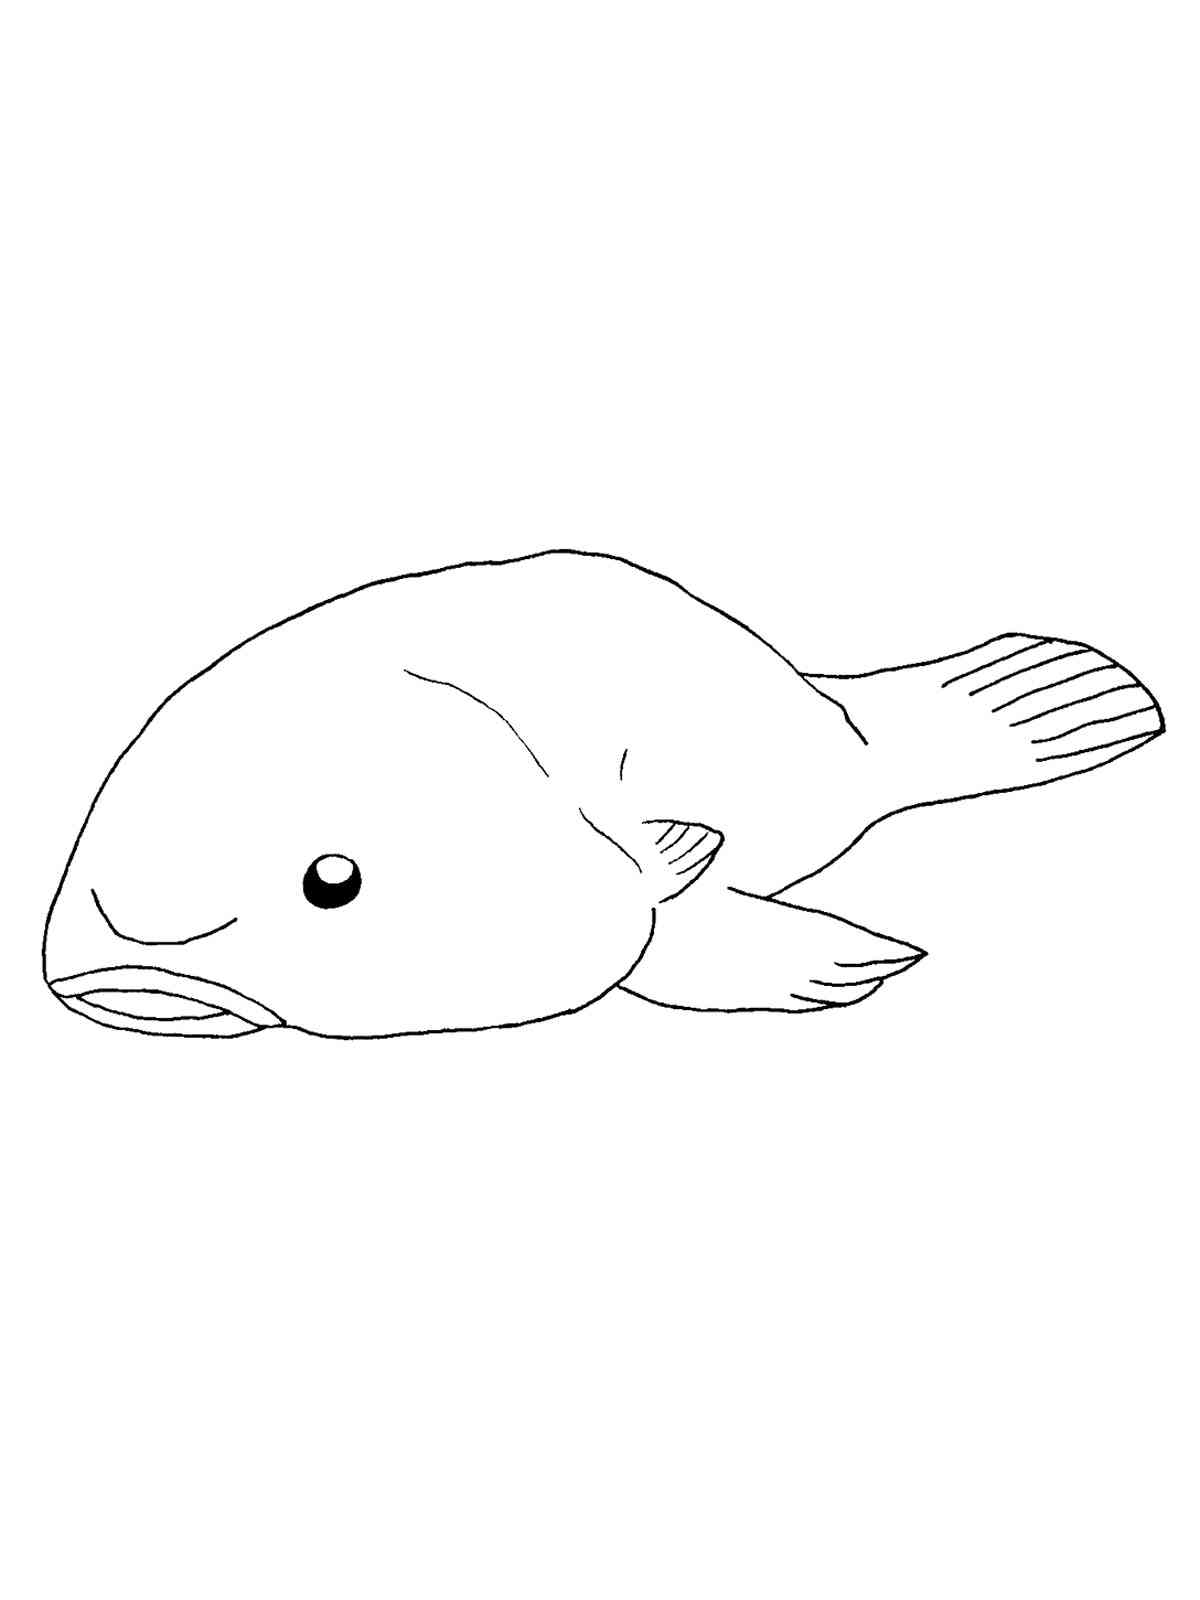 Blobfish 5 coloring page